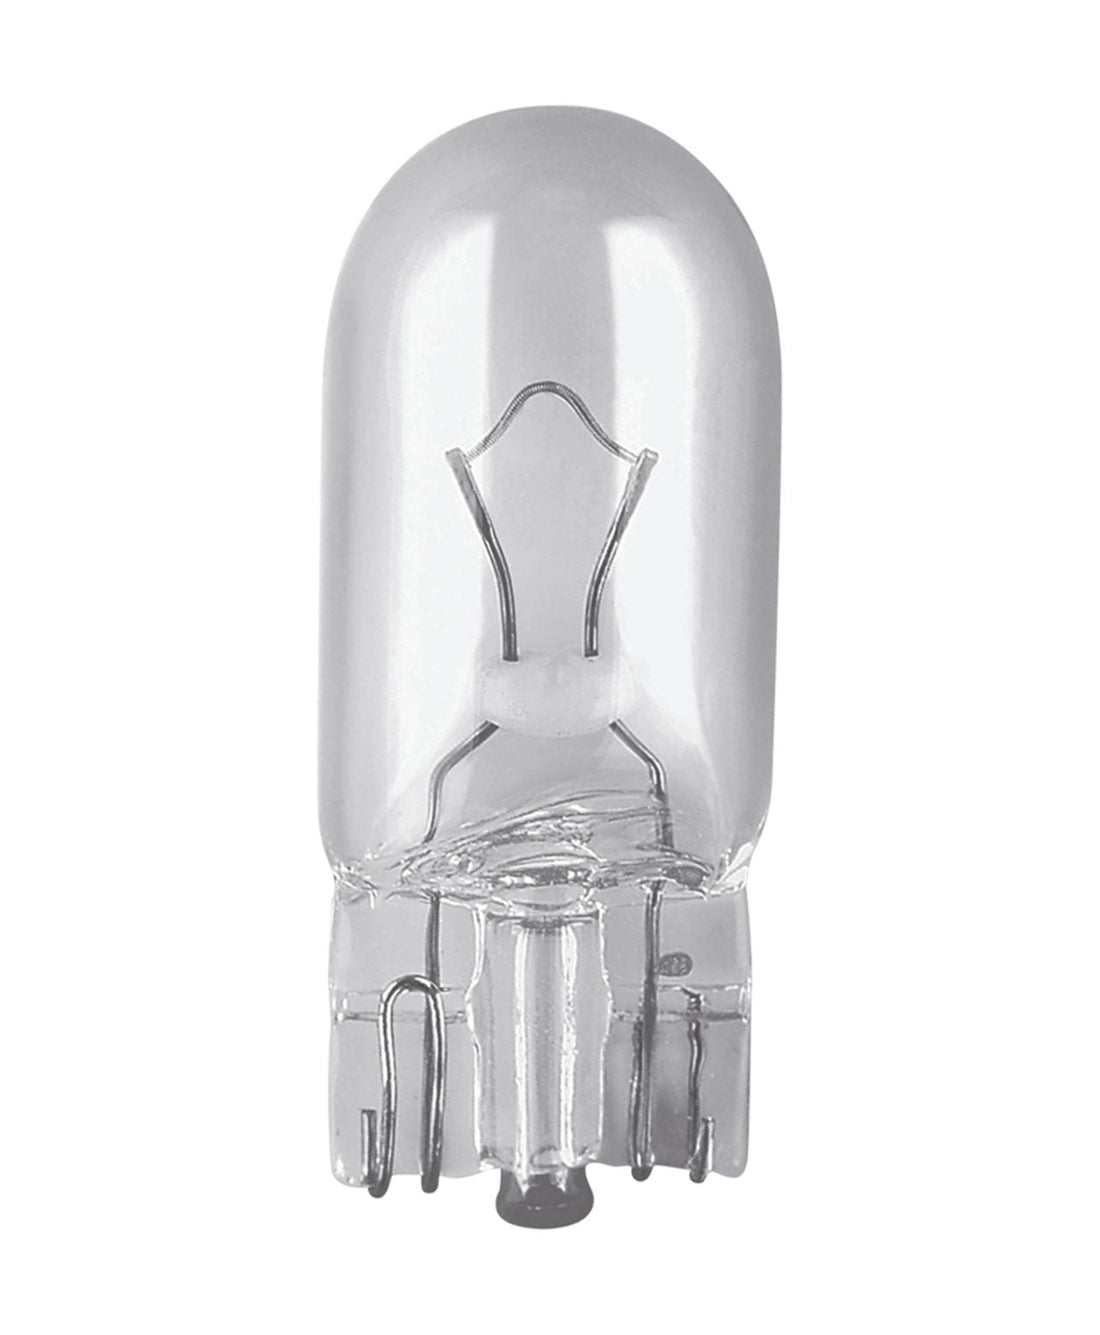 W5W ORIGINAL LINE 10er Pack - fahrzeuglampen.com